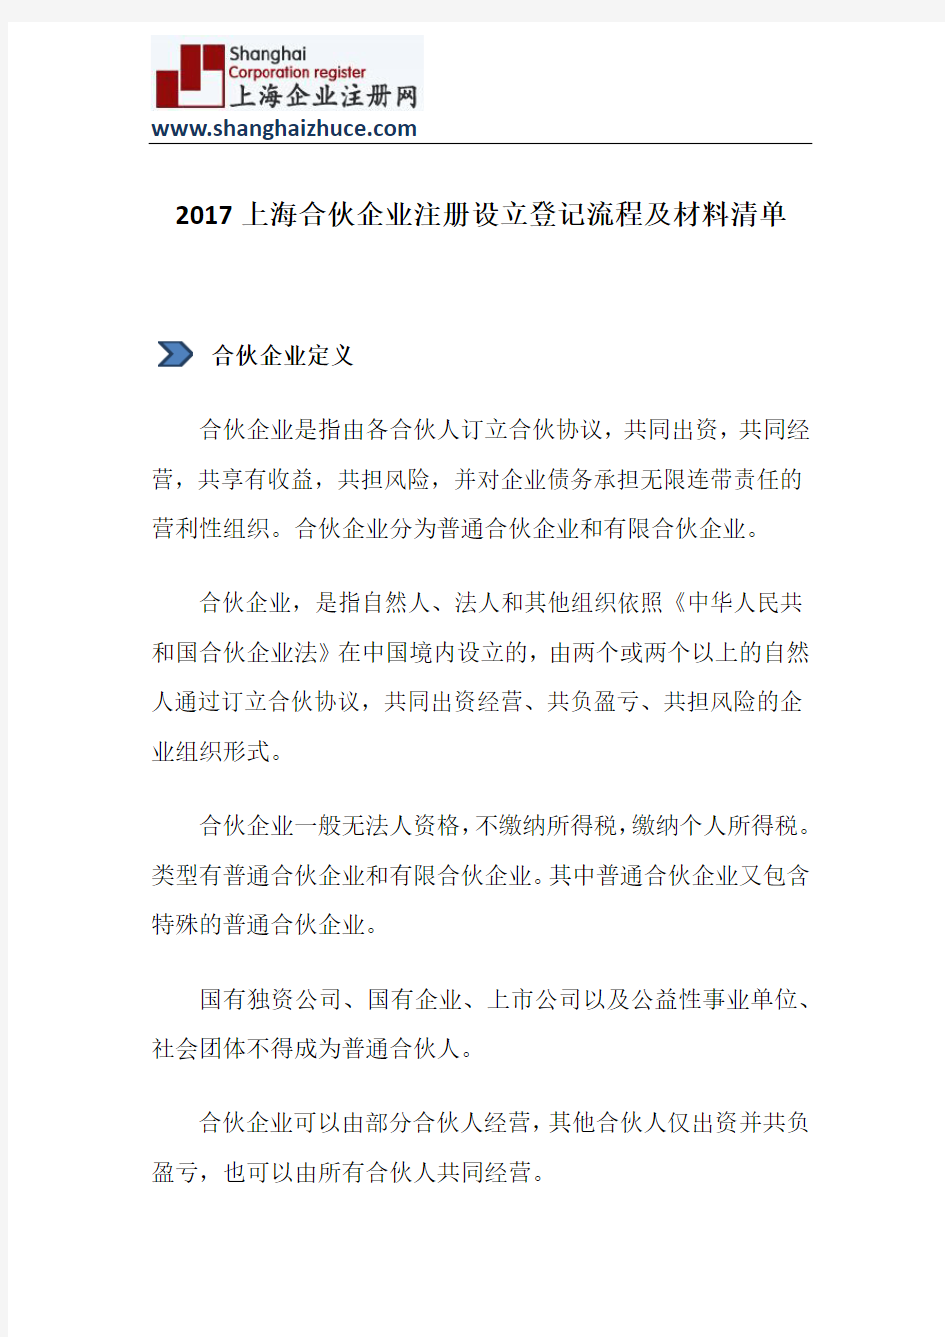 2017上海合伙企业注册设立登记流程及材料清单